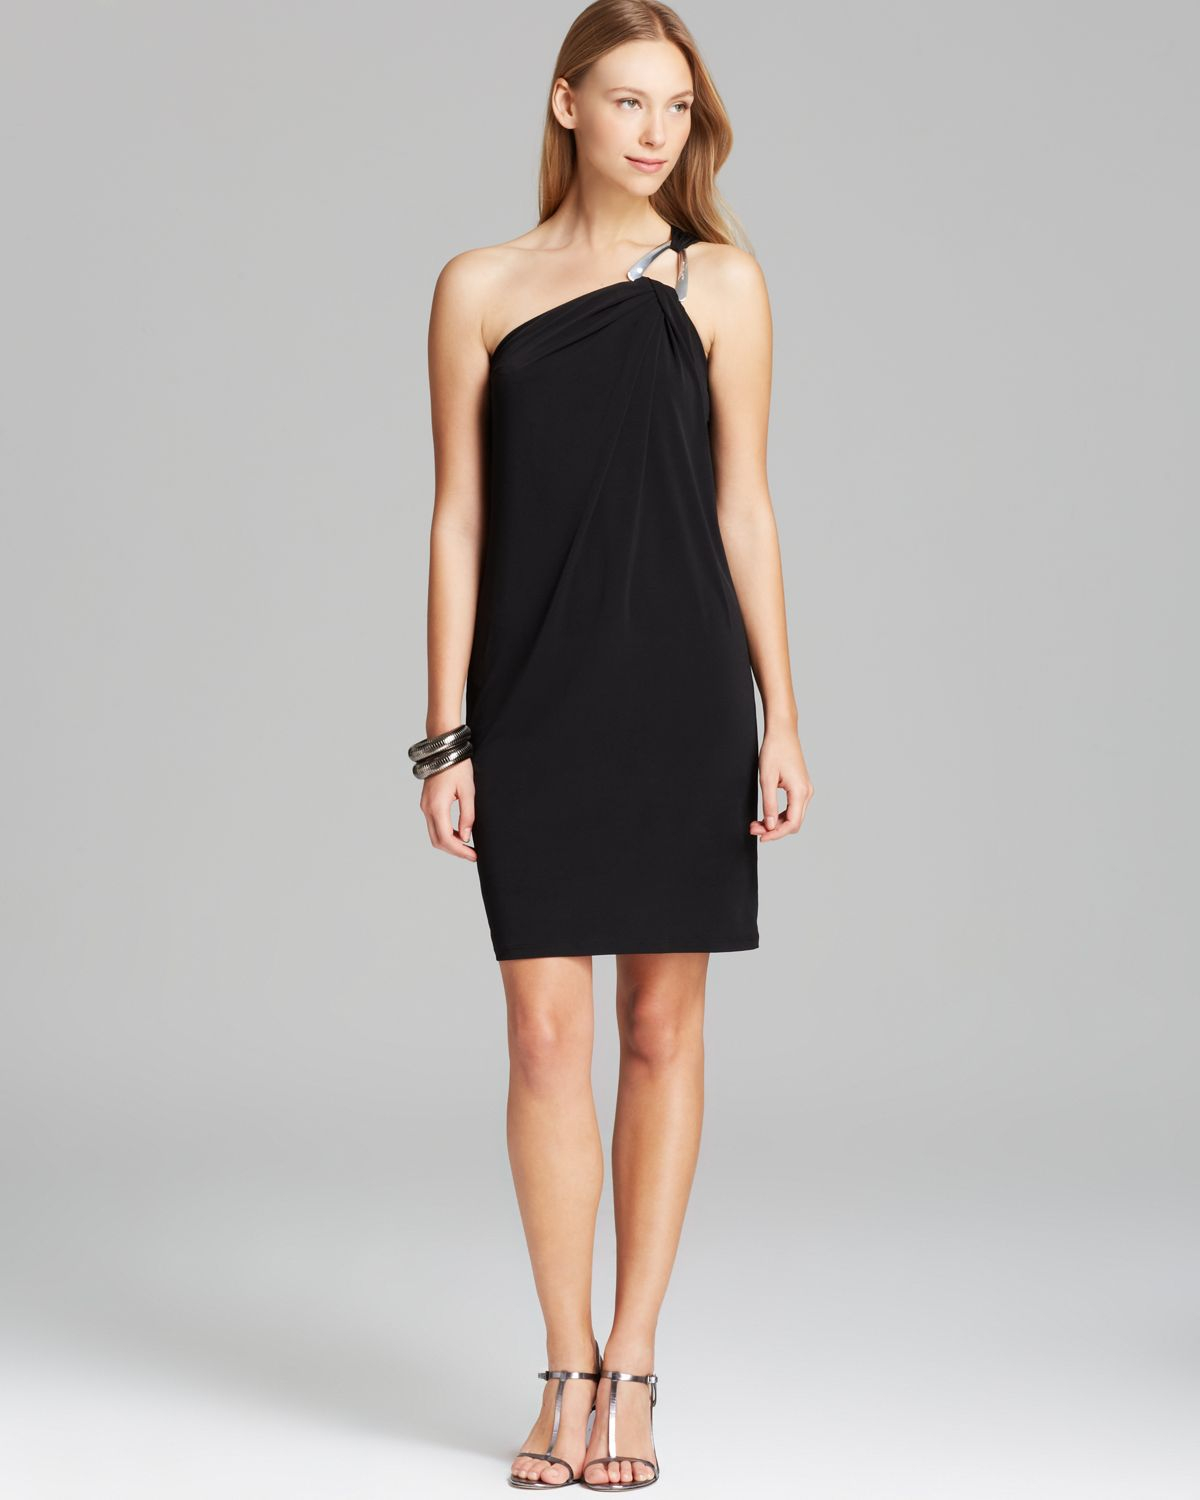 black 1 shoulder dress